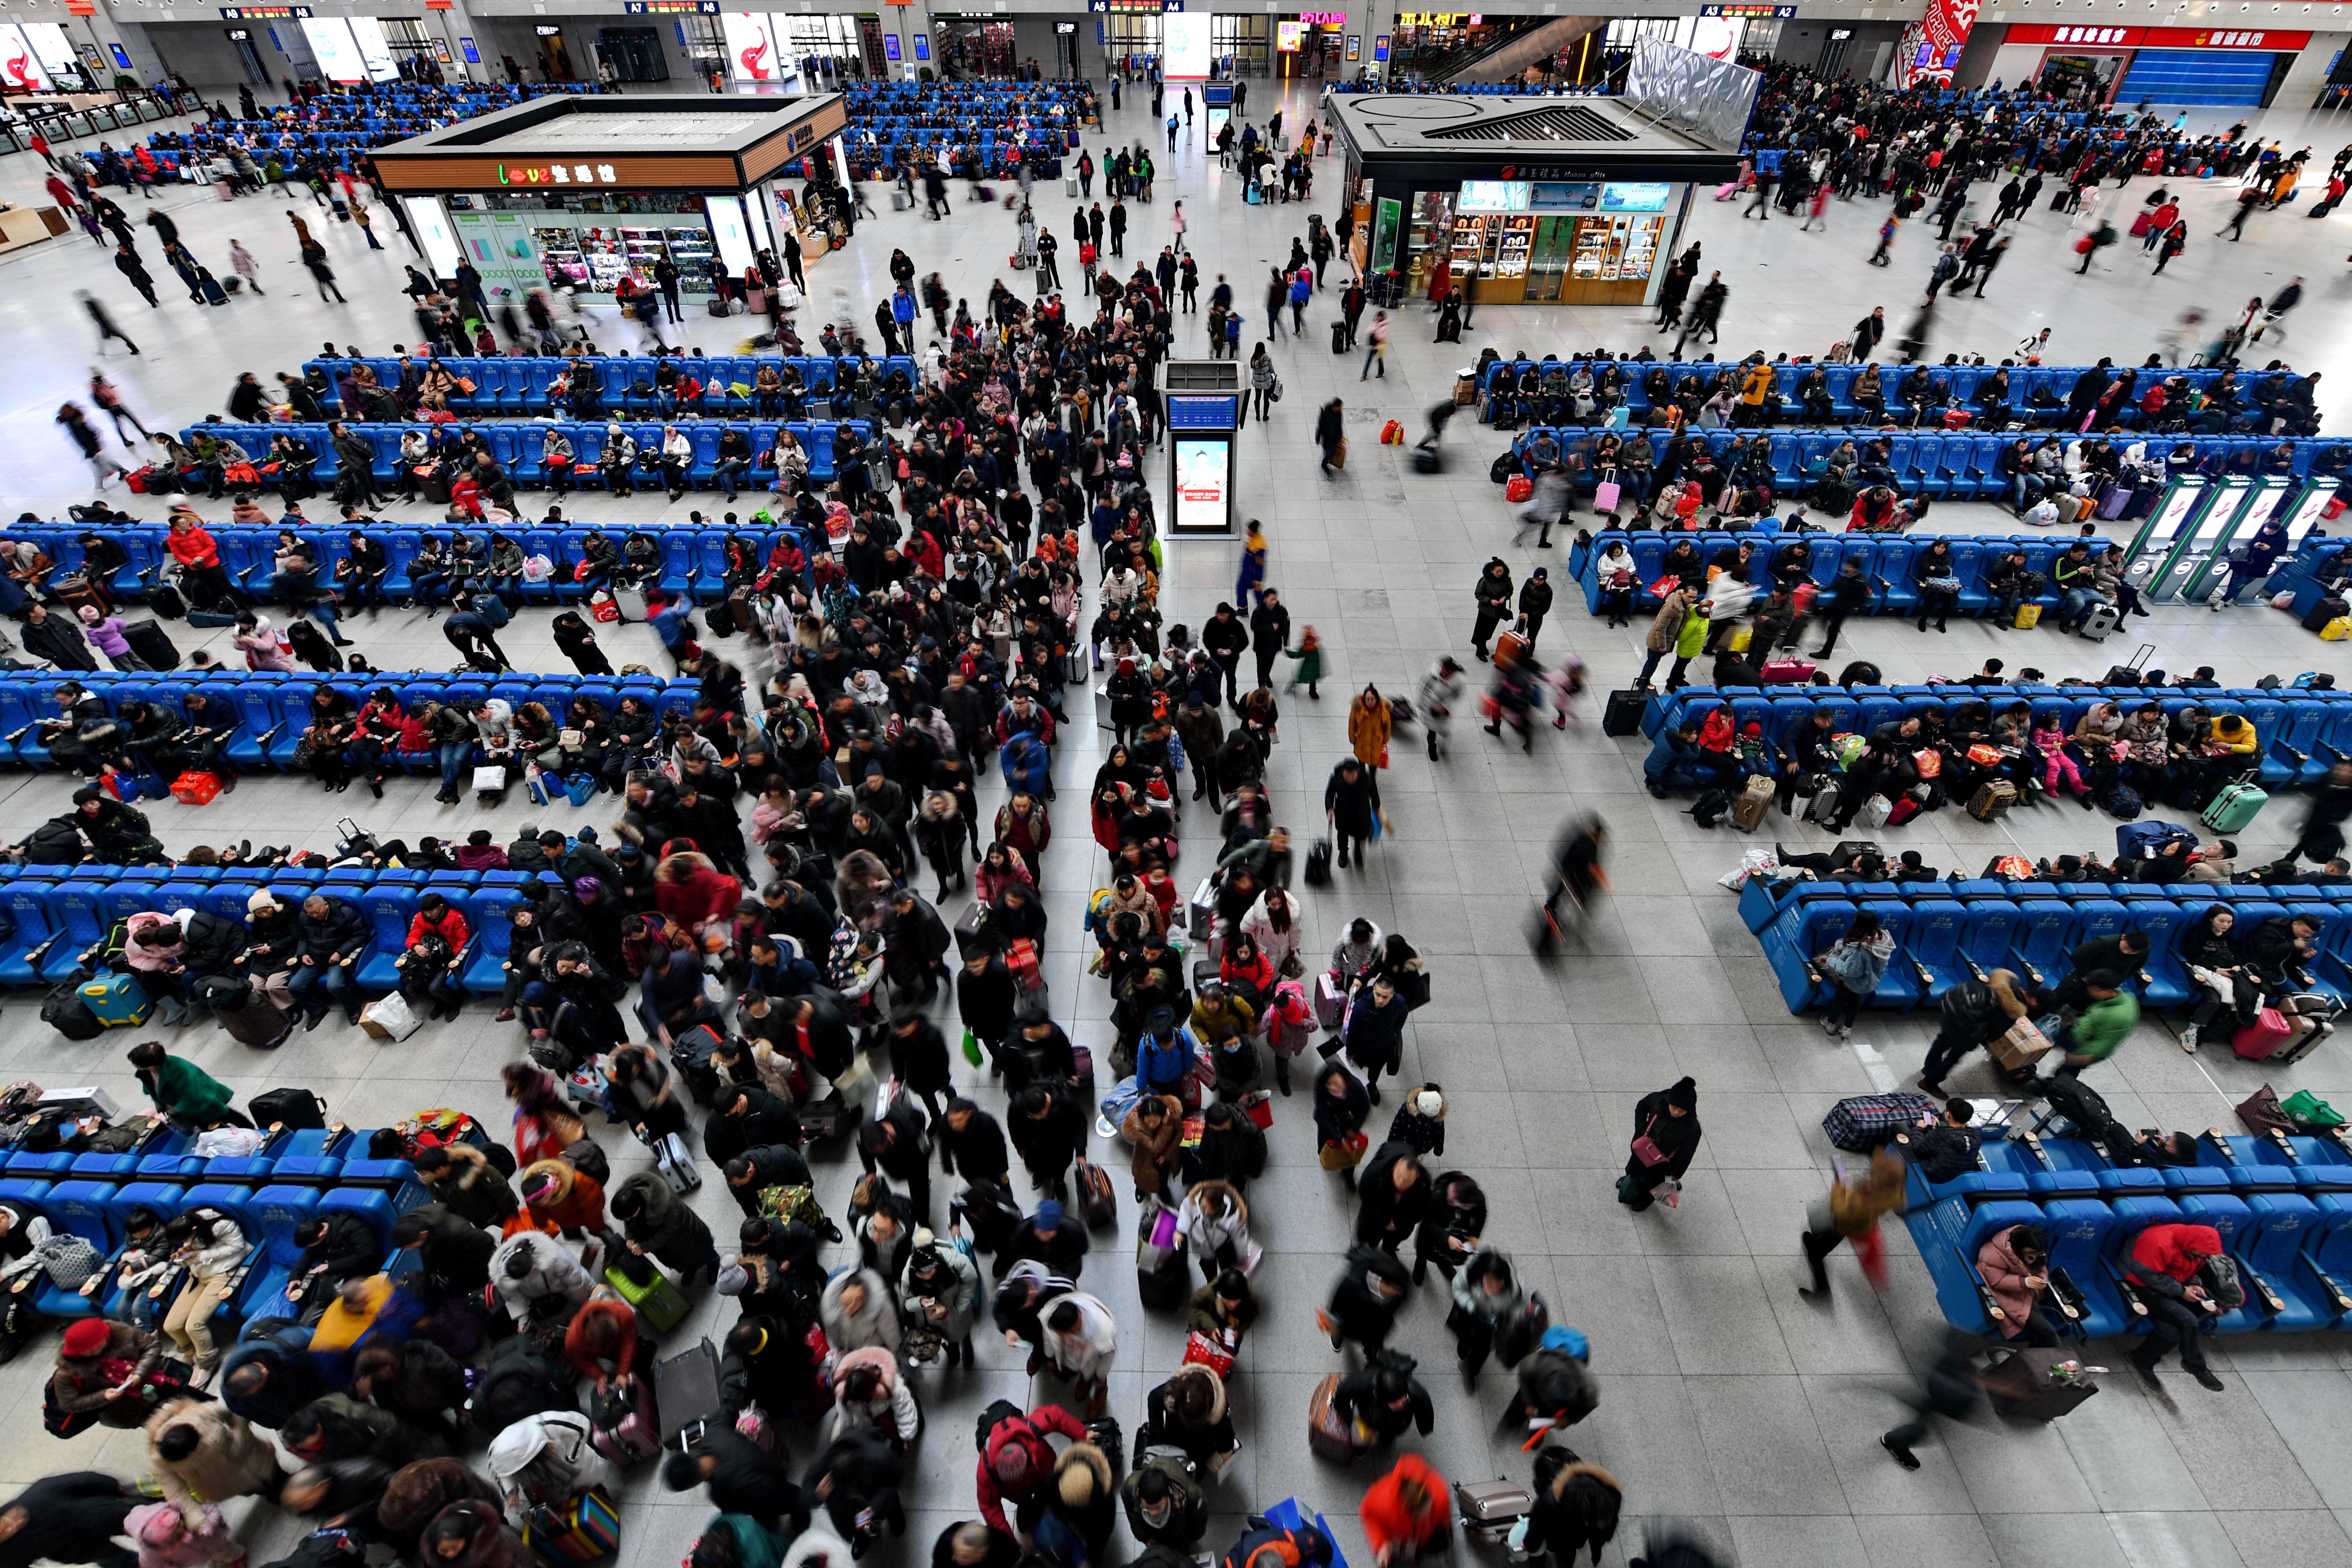 Kínában elkezdik letiltani a repülőkről és vonatokról azokat, akinek a viselkedésével nem elégedett az állam